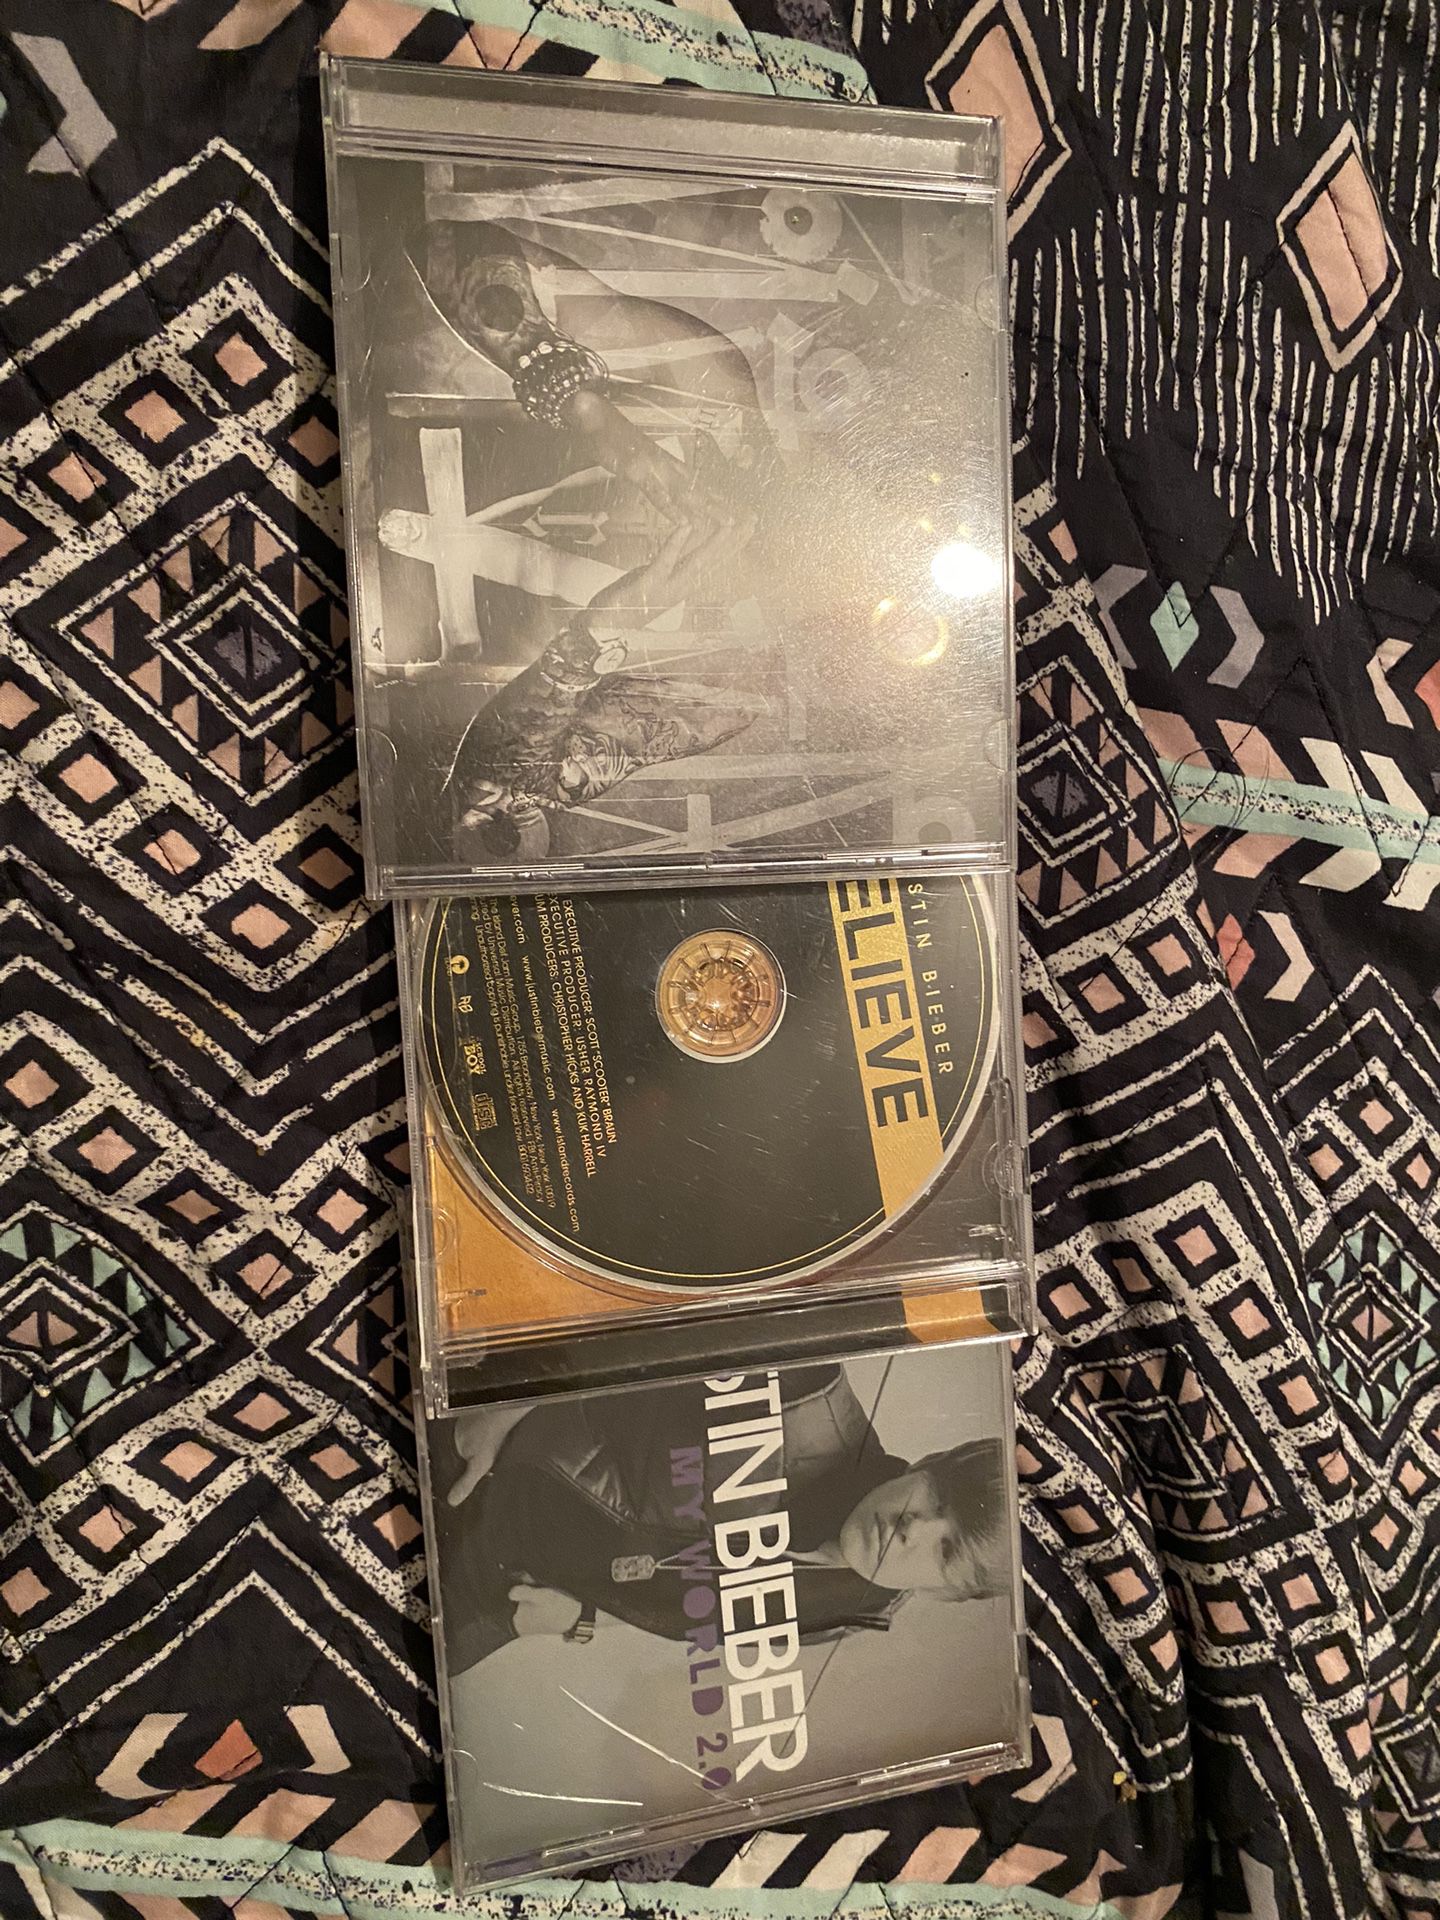 3 Justin Bieber CD Albums 